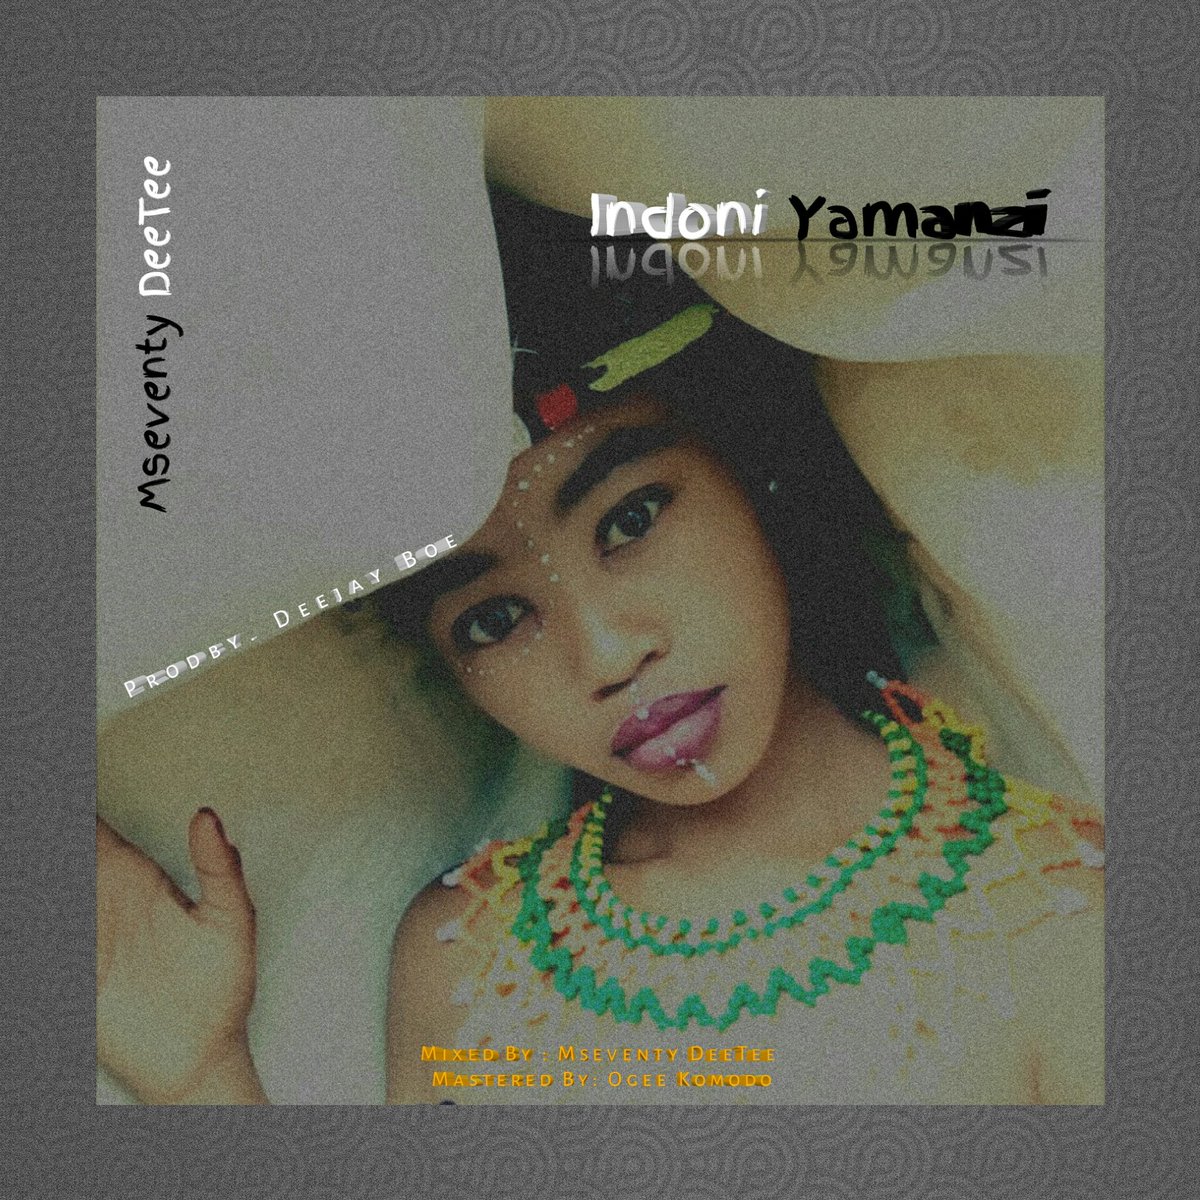 Mseventy DeeTee - Indoni Yamanzi 13